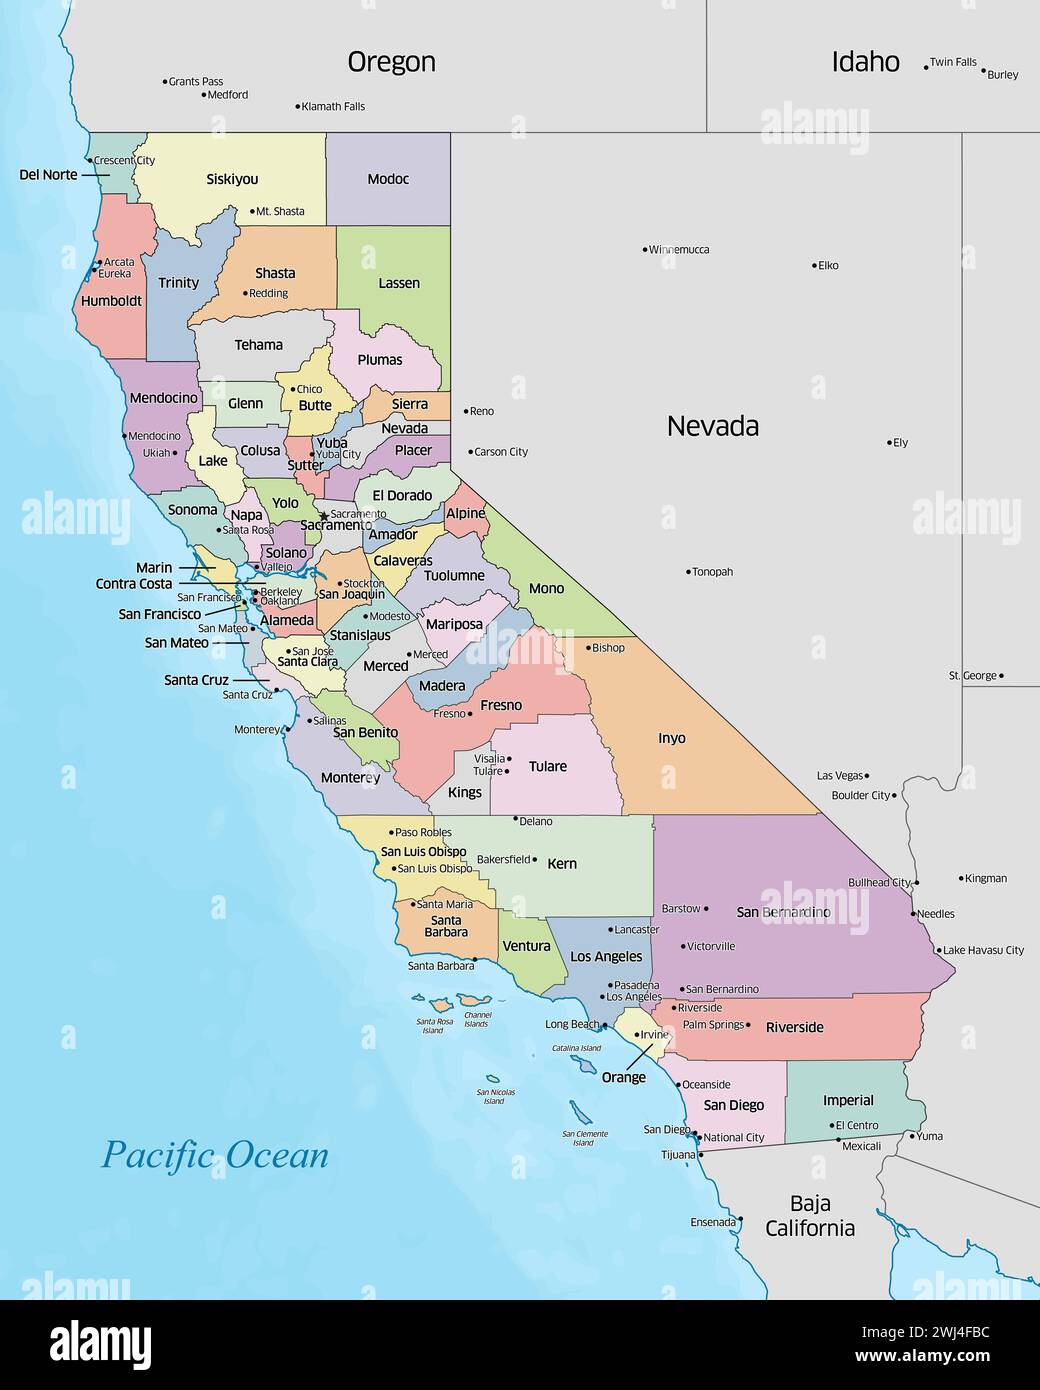 Colorata mappa politica delle contee che compongono lo stato della California che si trova negli Stati Uniti. Foto Stock